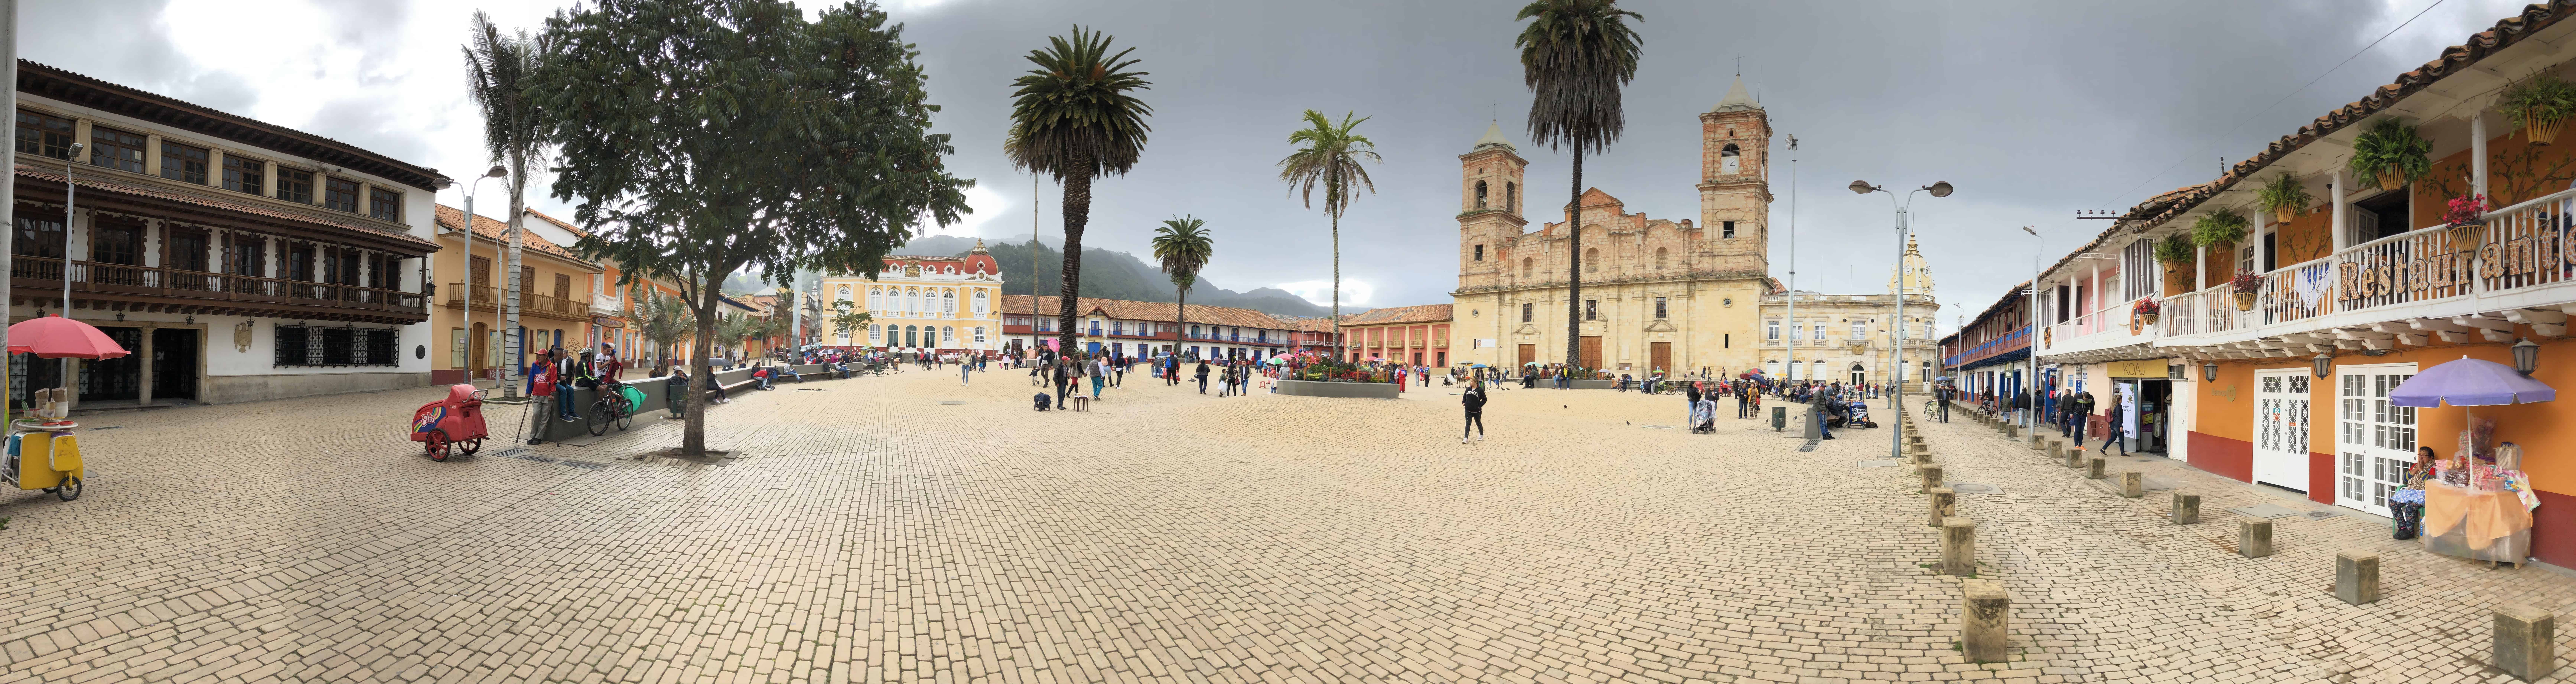 Panoramic view of the main plaza